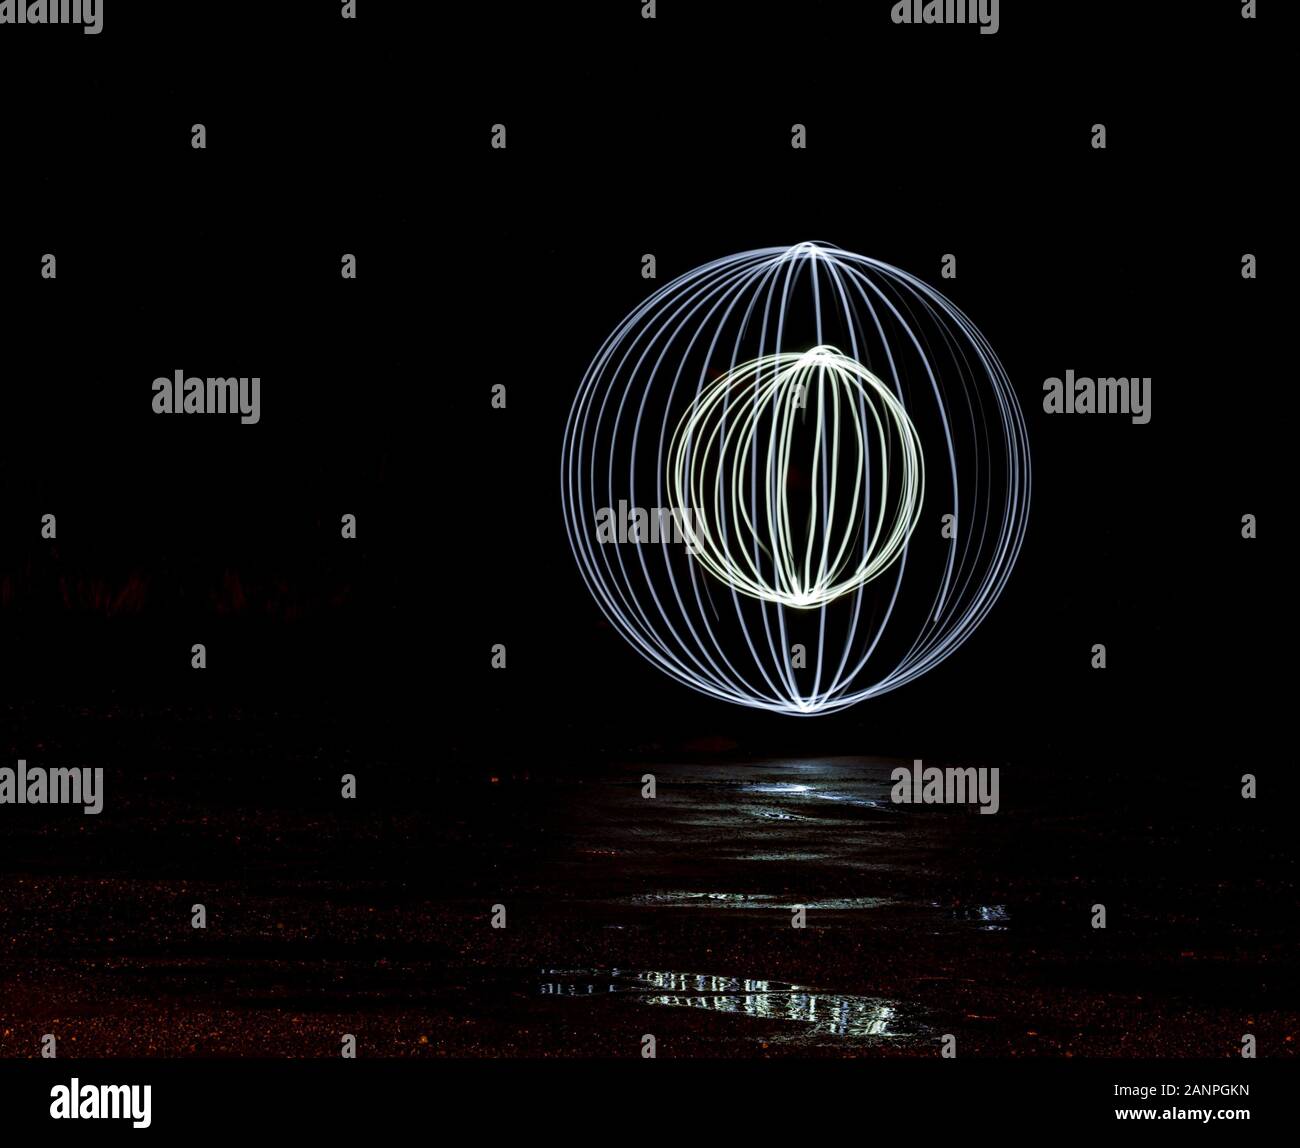 Les spirales globe circulaire créé par peindre avec la lumière dans l'obscurité avec des réflexions Banque D'Images